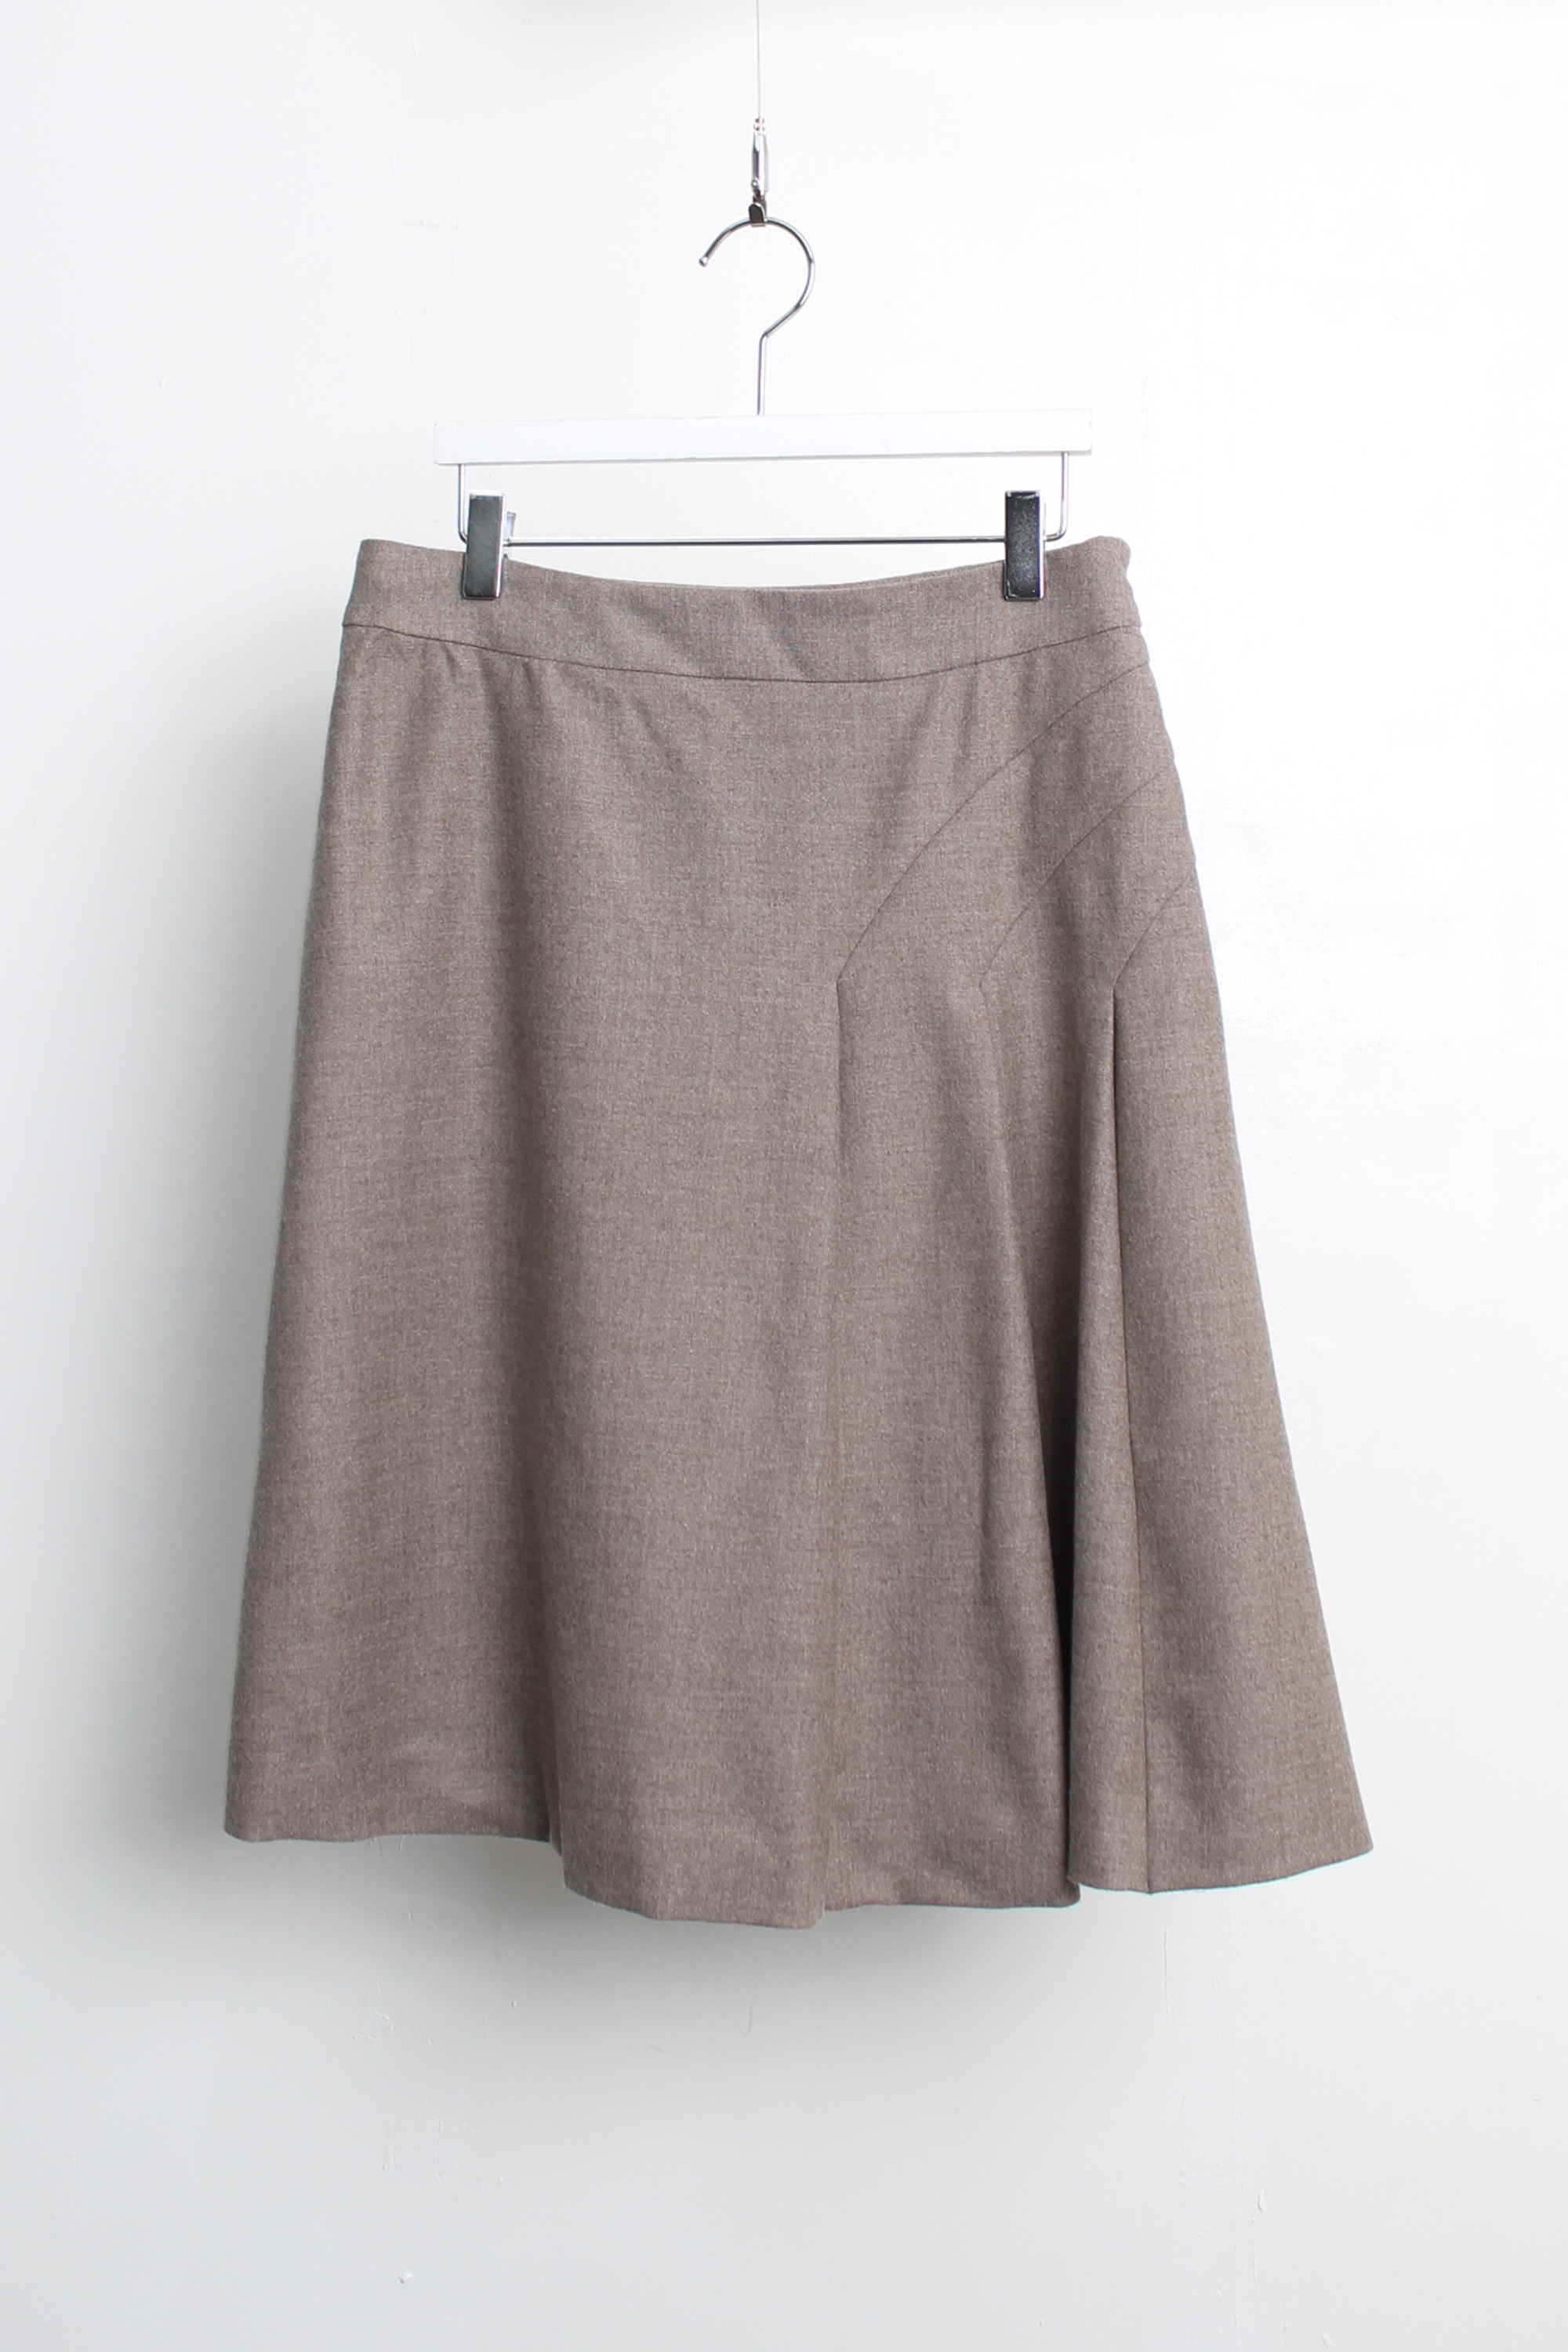 KIYOKO TAKASE skirt(fabric by Loro Piana)